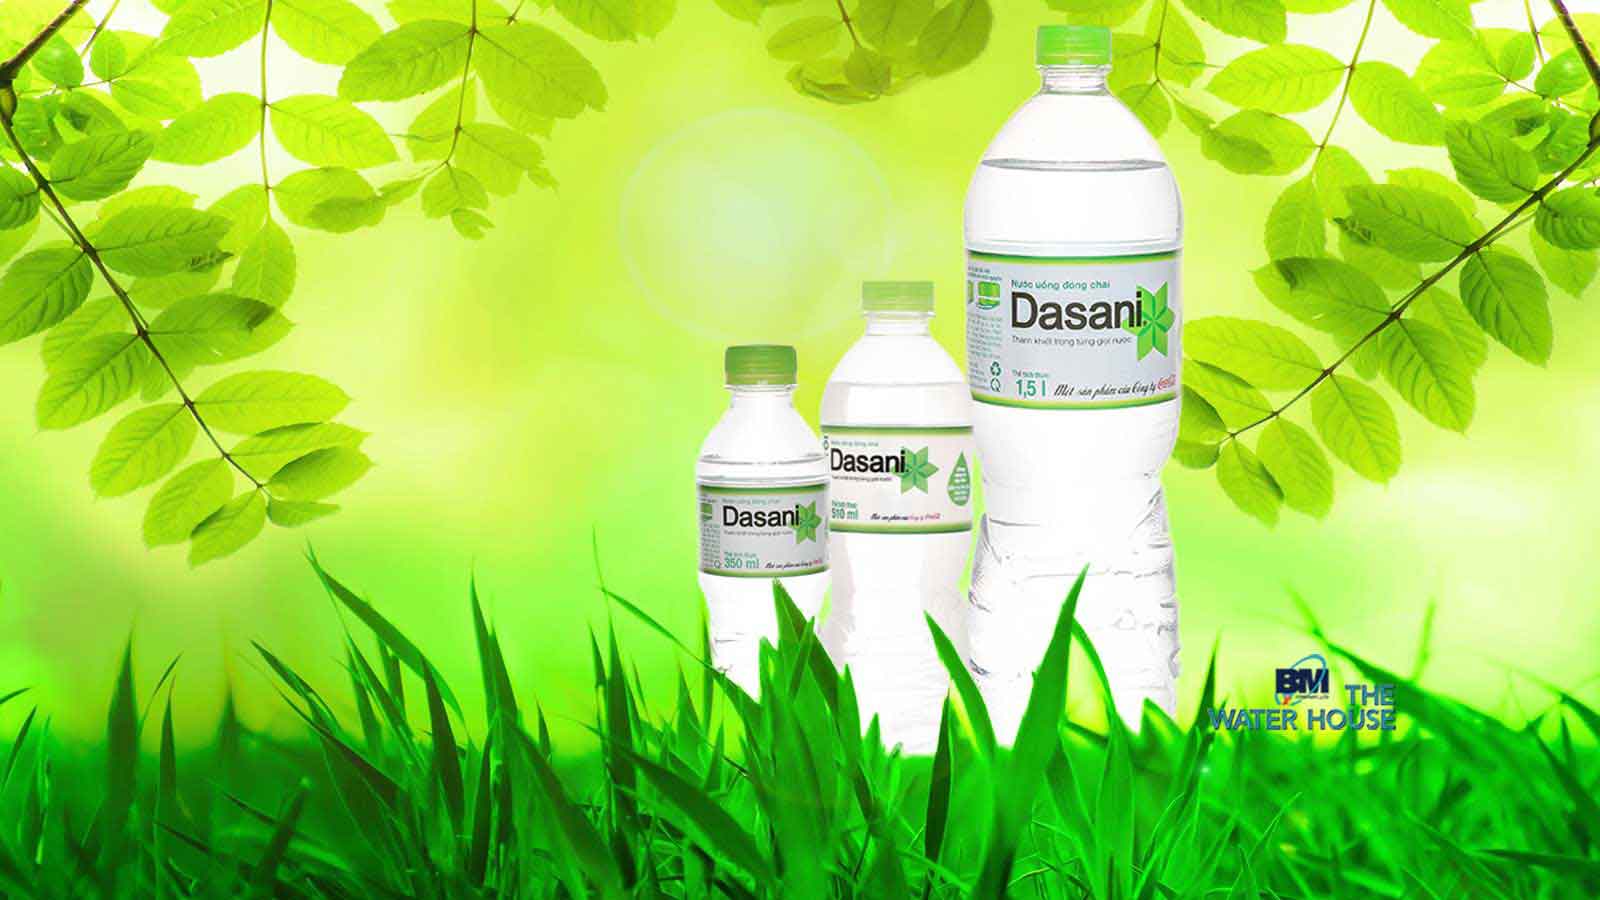 Giao nước uống tận nhà đem đến thương hiệu Dasani